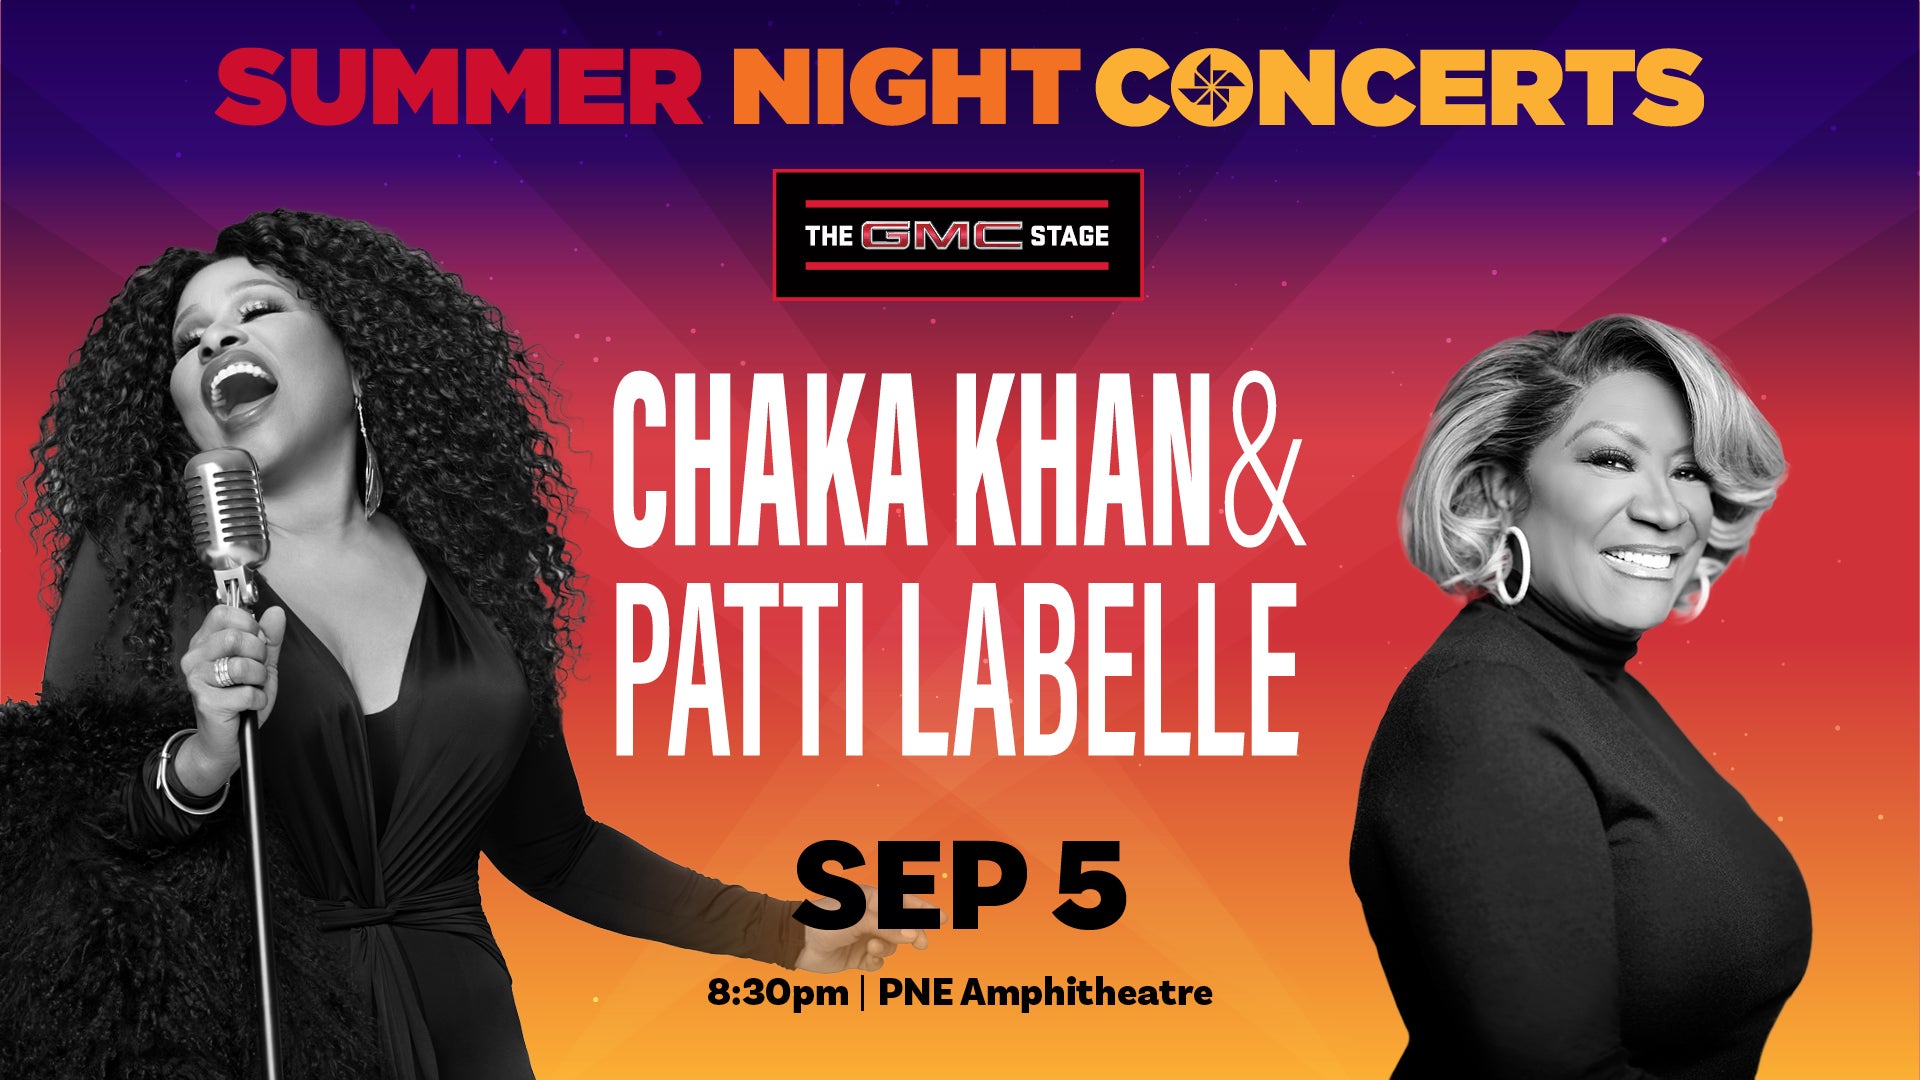 Chaka Khan & Patti LaBelle